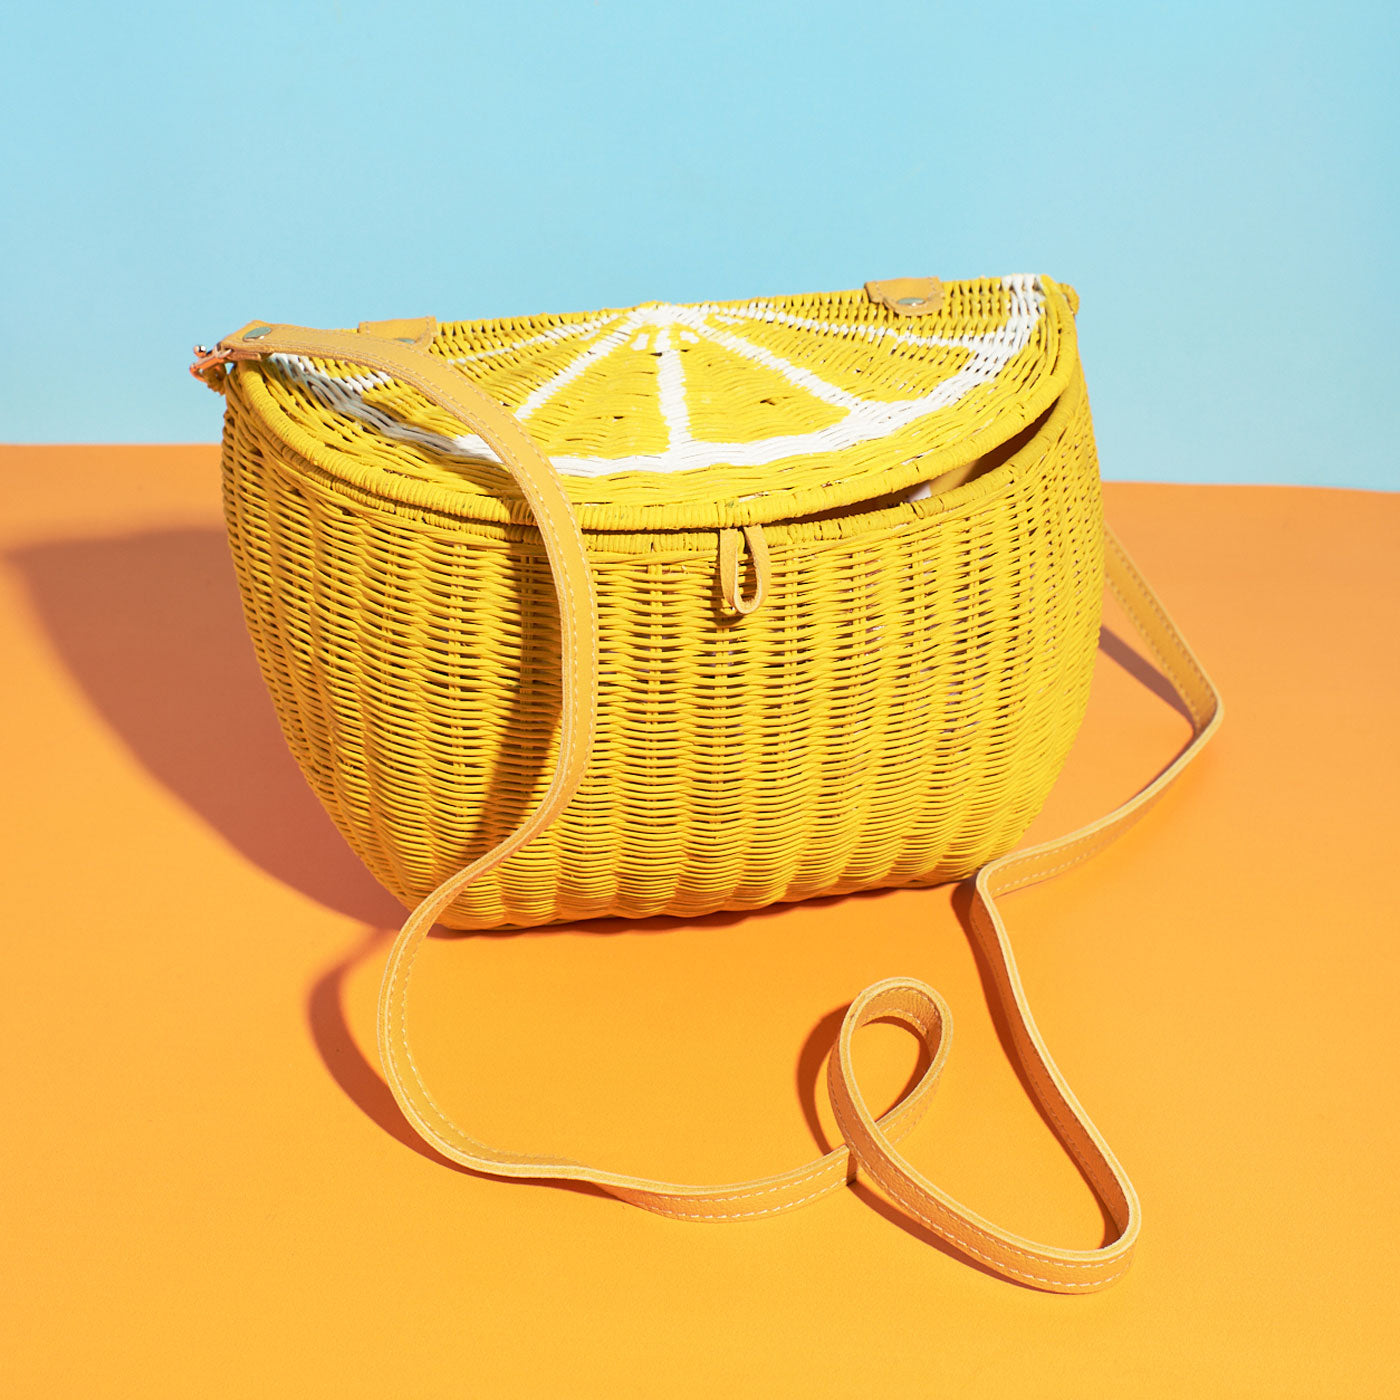 https://wickerdarling.com/cdn/shop/products/Wicker-Darling_lemon-shaped-bag-fruit-wicker-basket2.jpg?v=1644305503